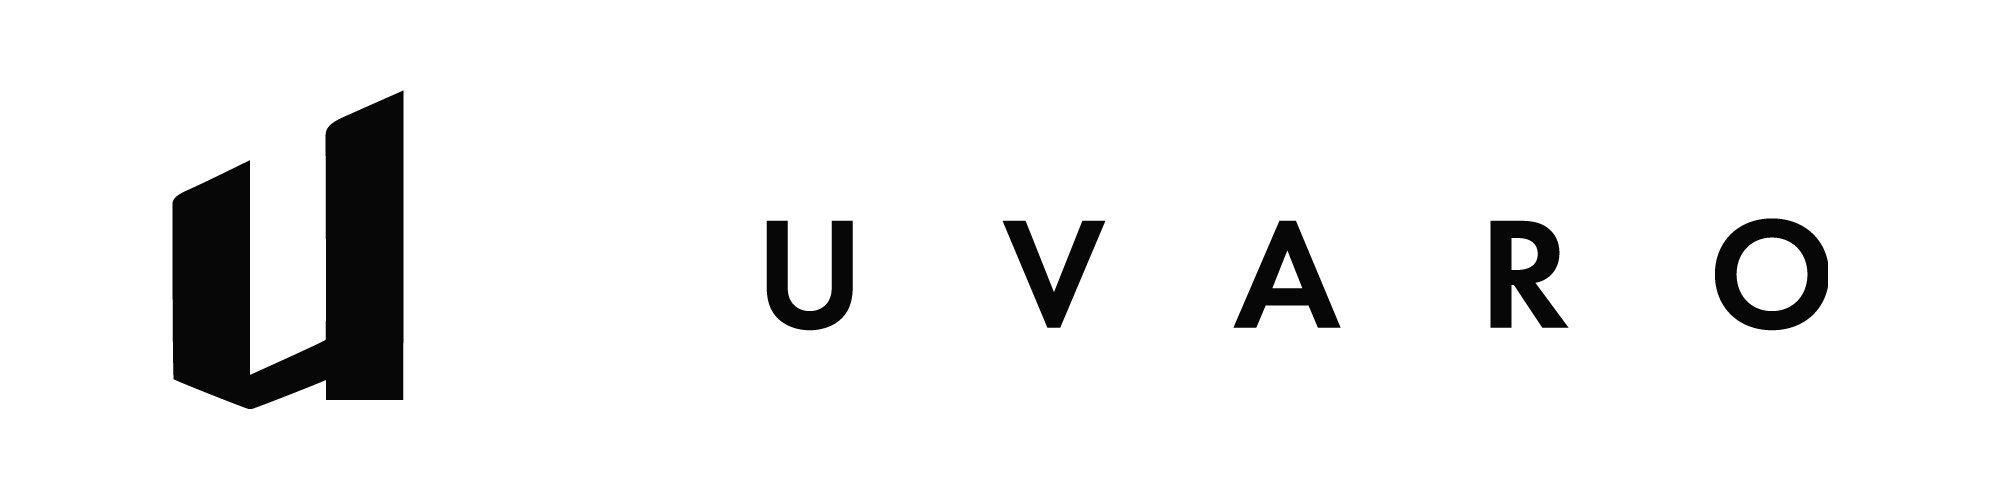 logo-uvaro-black